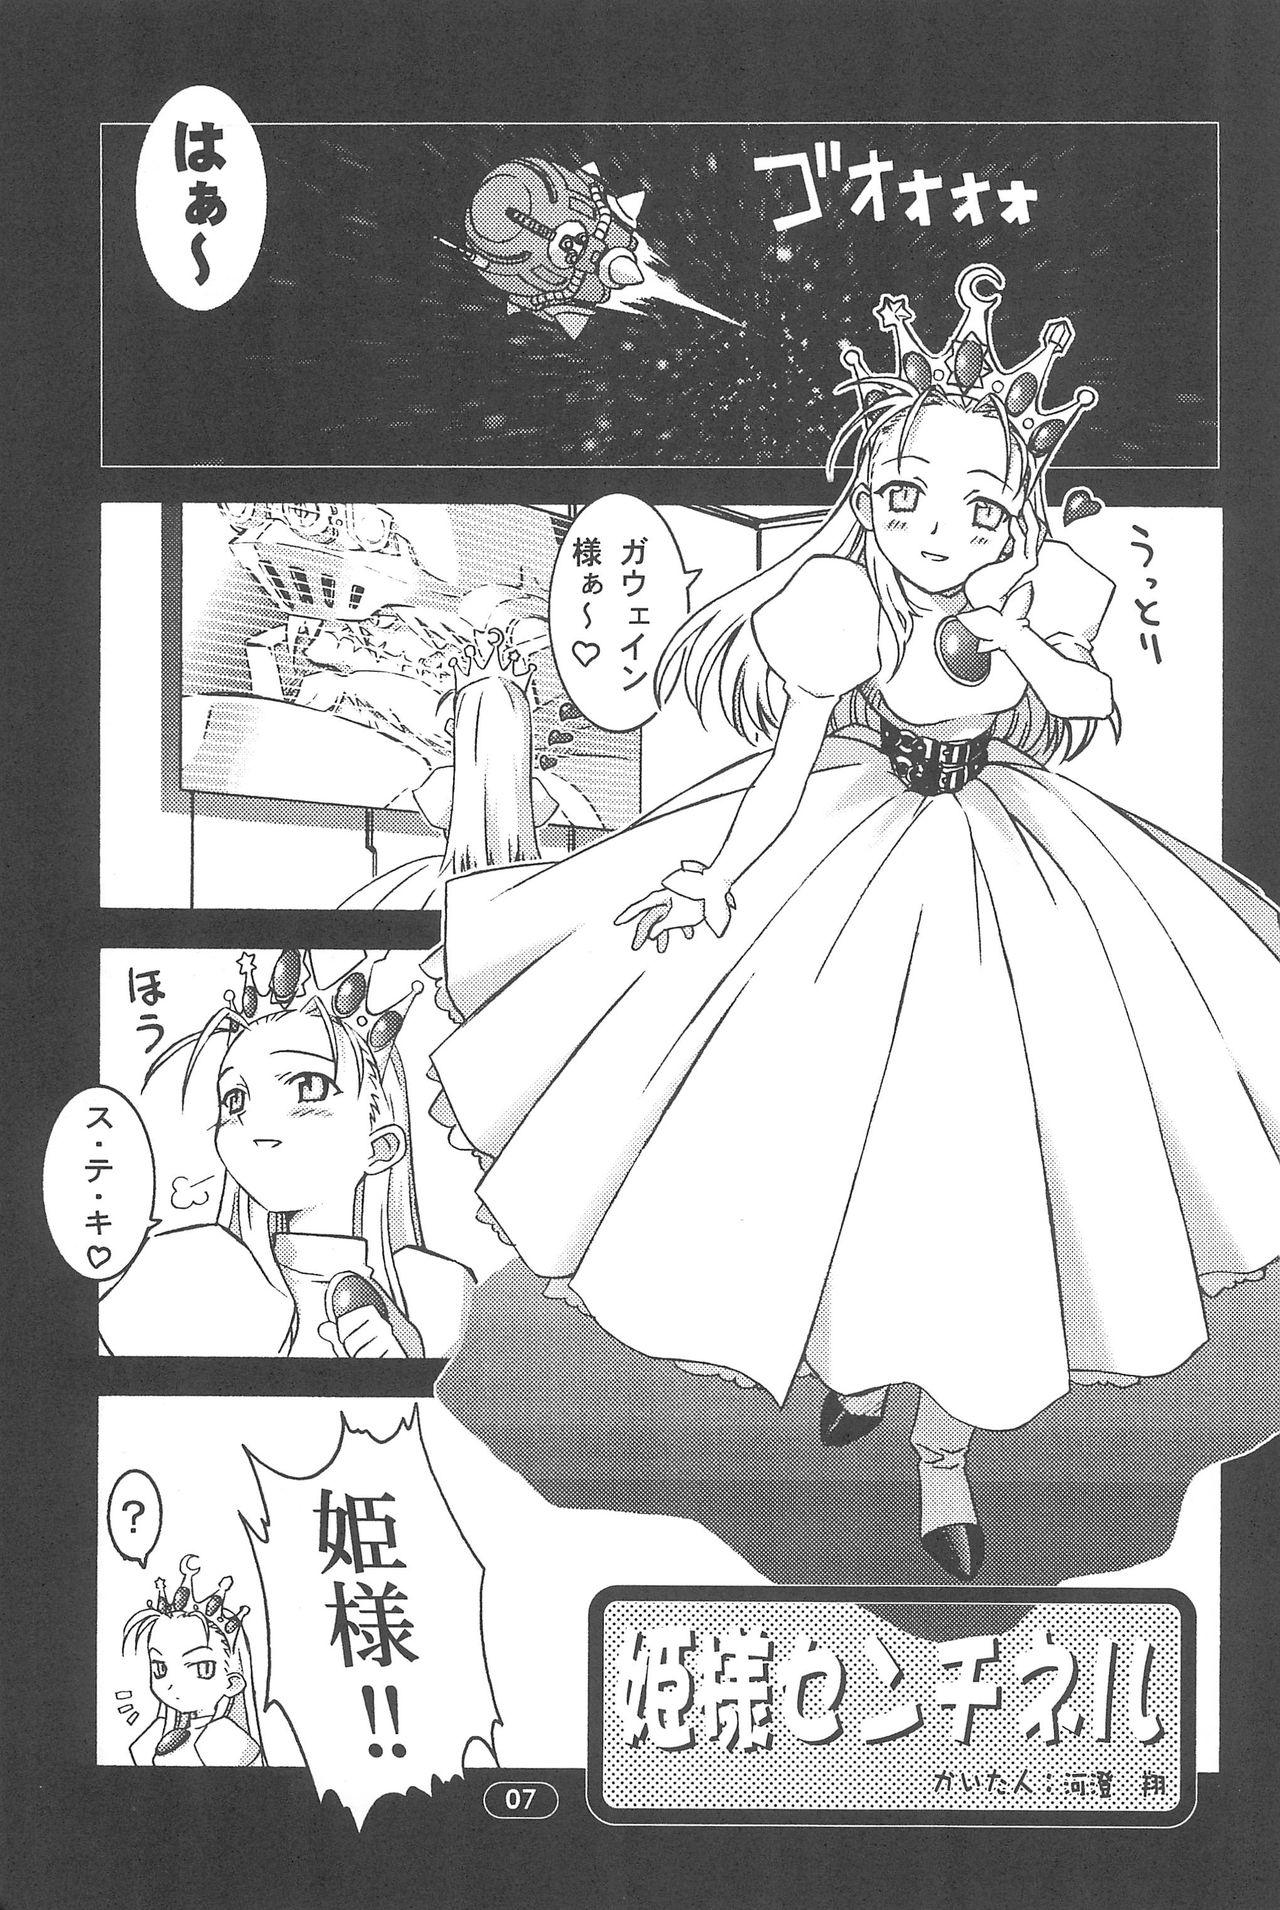 edel Prinzessin 8